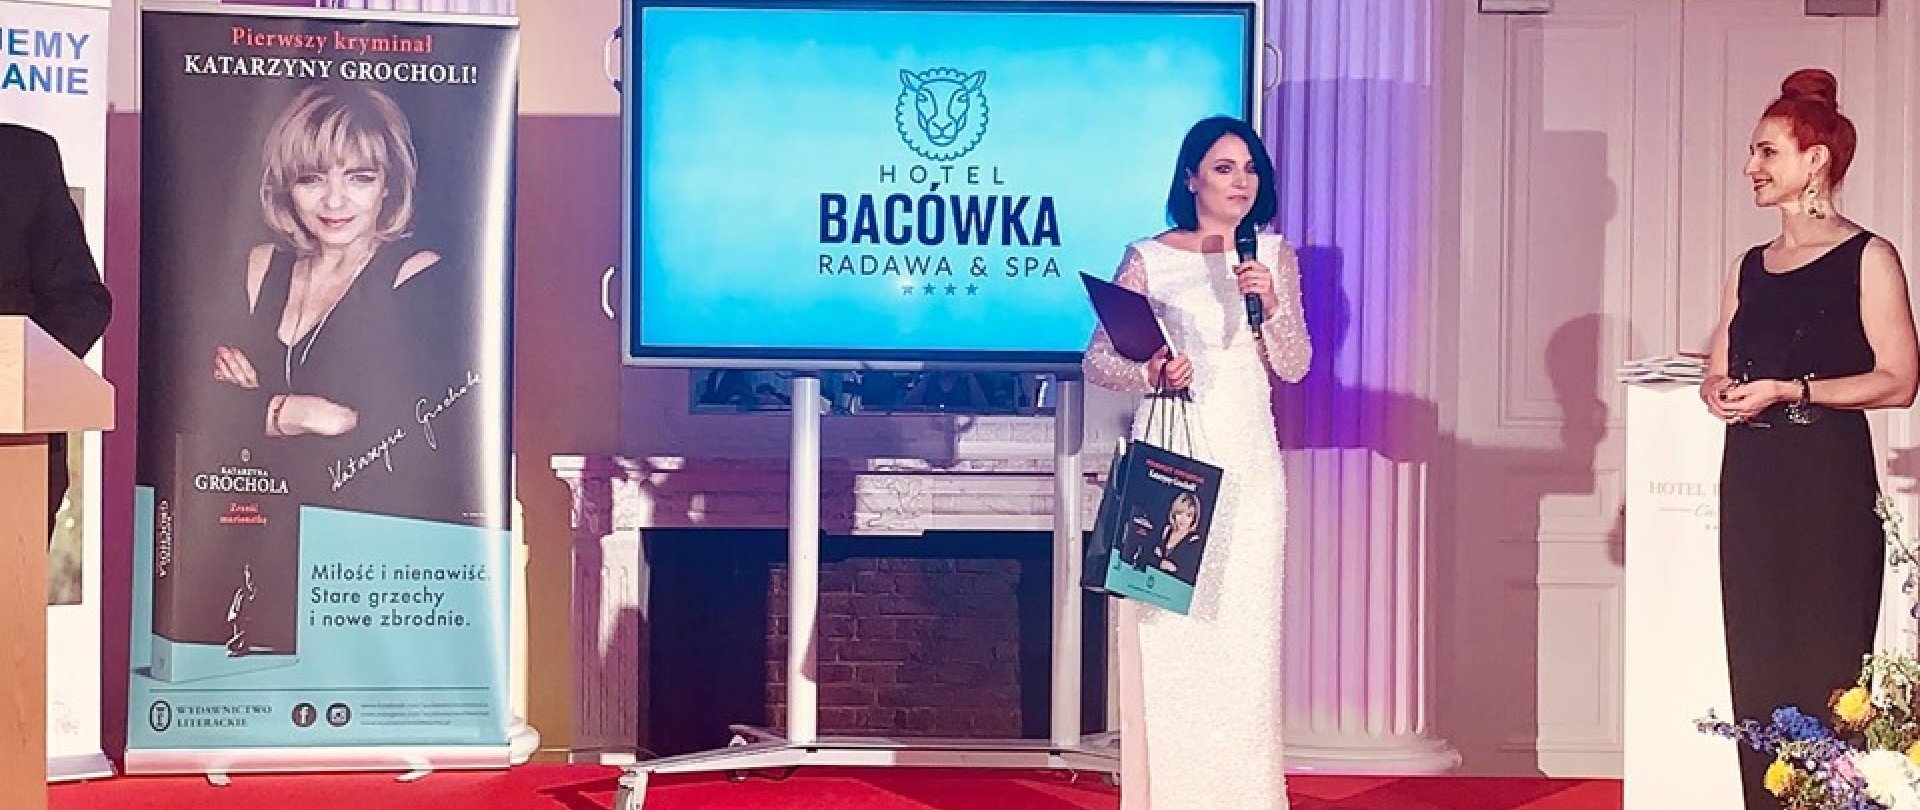 Właścicielka hotelu Bacówka Radawa & SPA pośród 50 wypływowych kobiet biznesu!